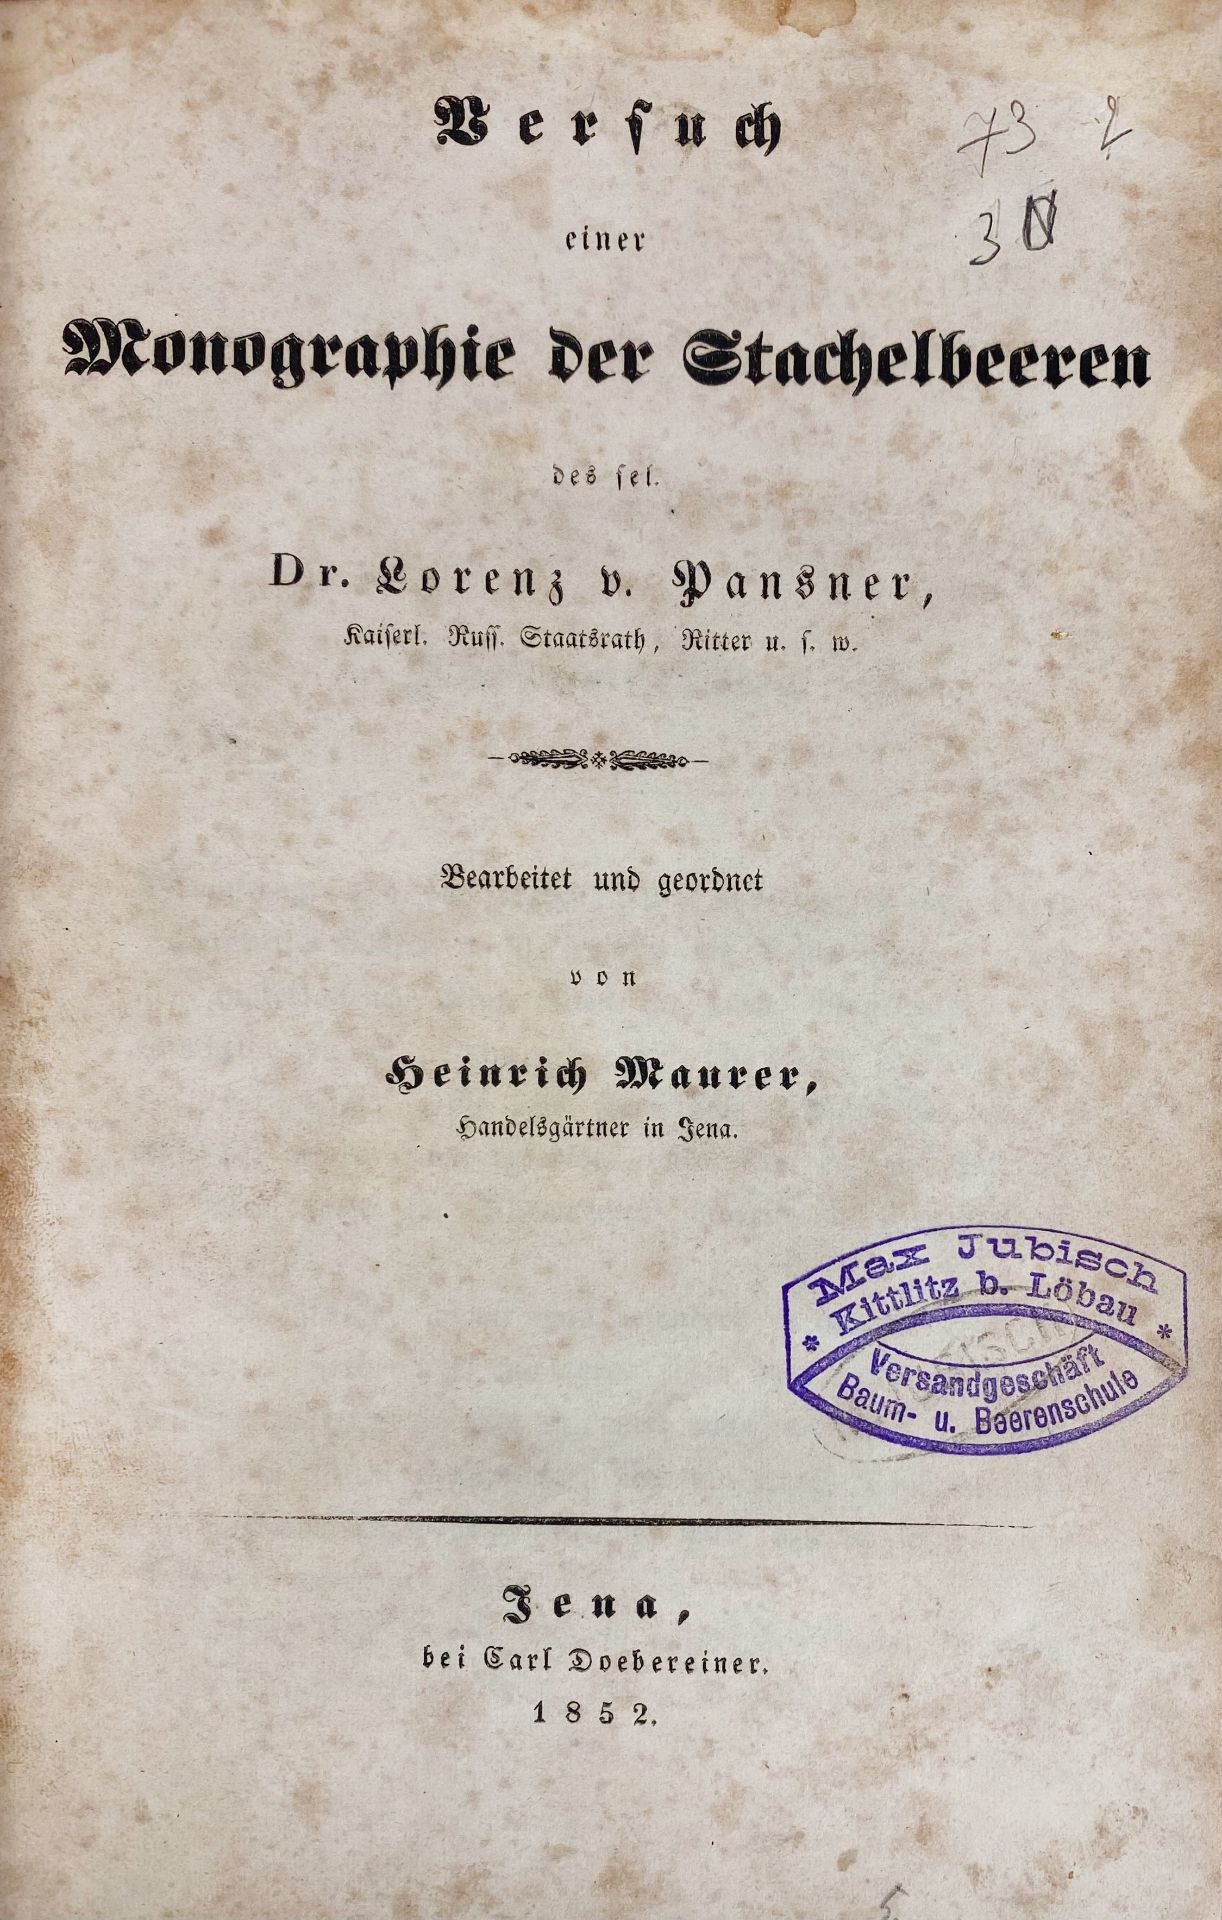 BERRIES -- PANSNER, L. v. Versuch einer Monographie der Stachelbeeren. Bearb. und geordnet